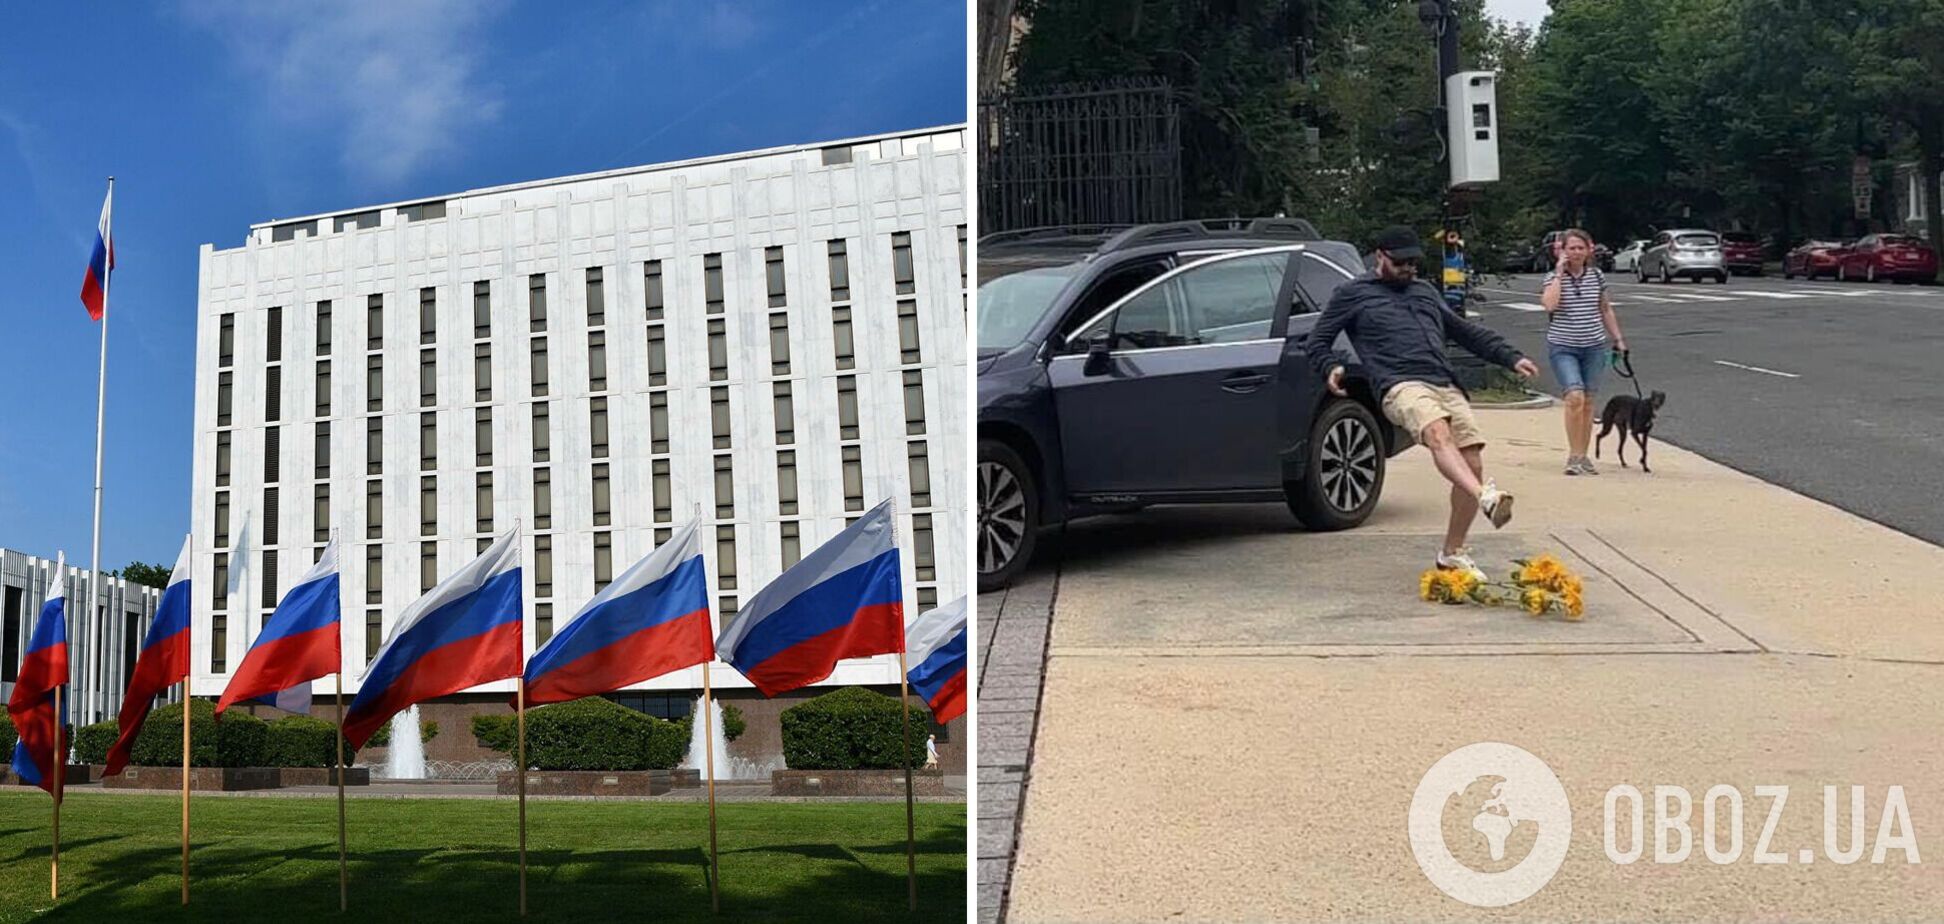 Сотрудник посольства РФ в США растоптал подсолнухи у здания, которые принесли дети. Фото